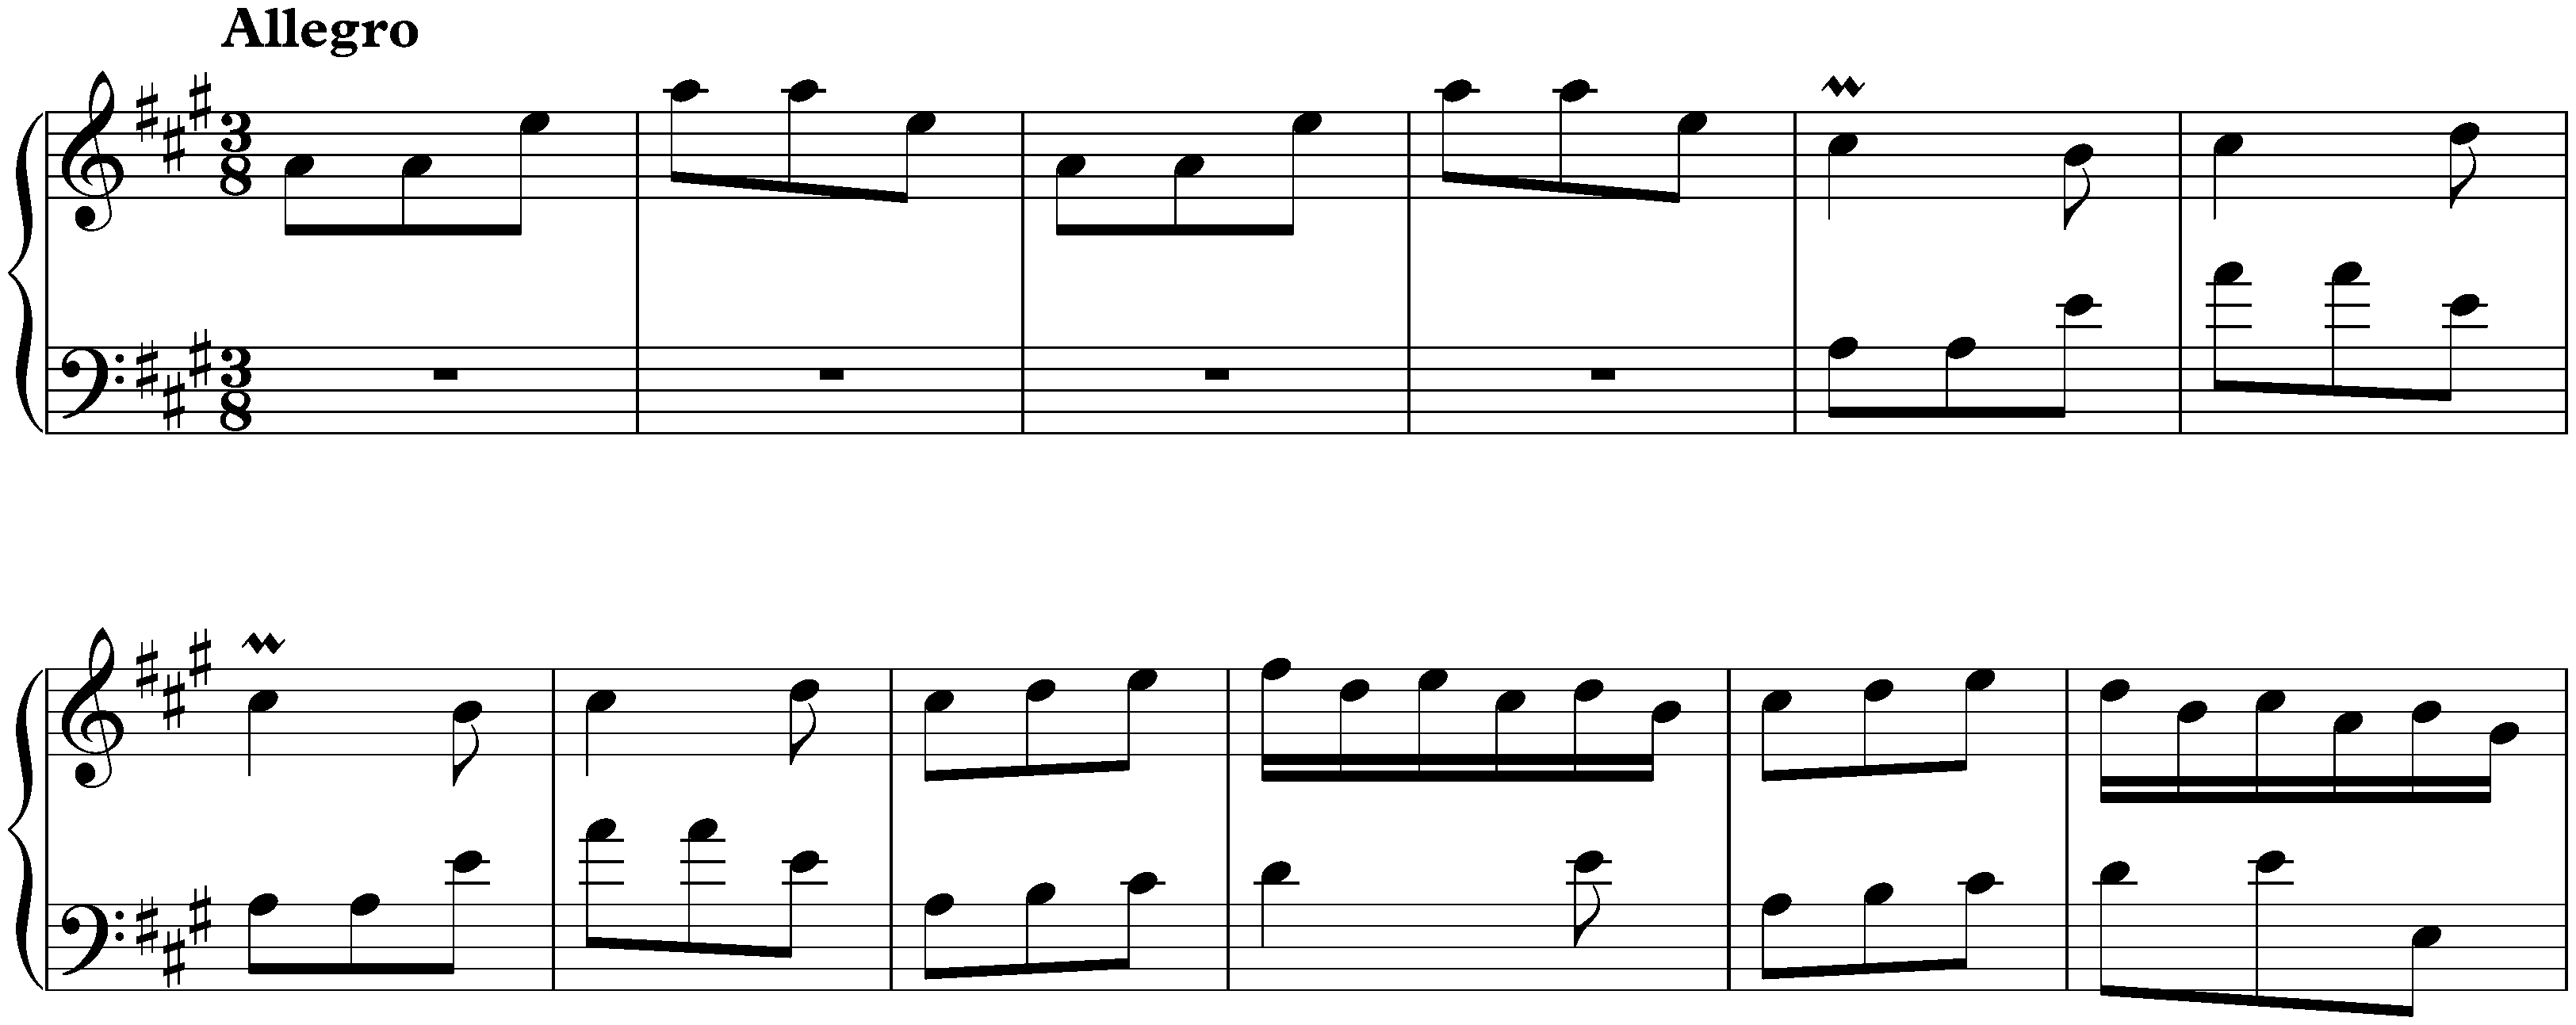 Sonata in A major, K. 209